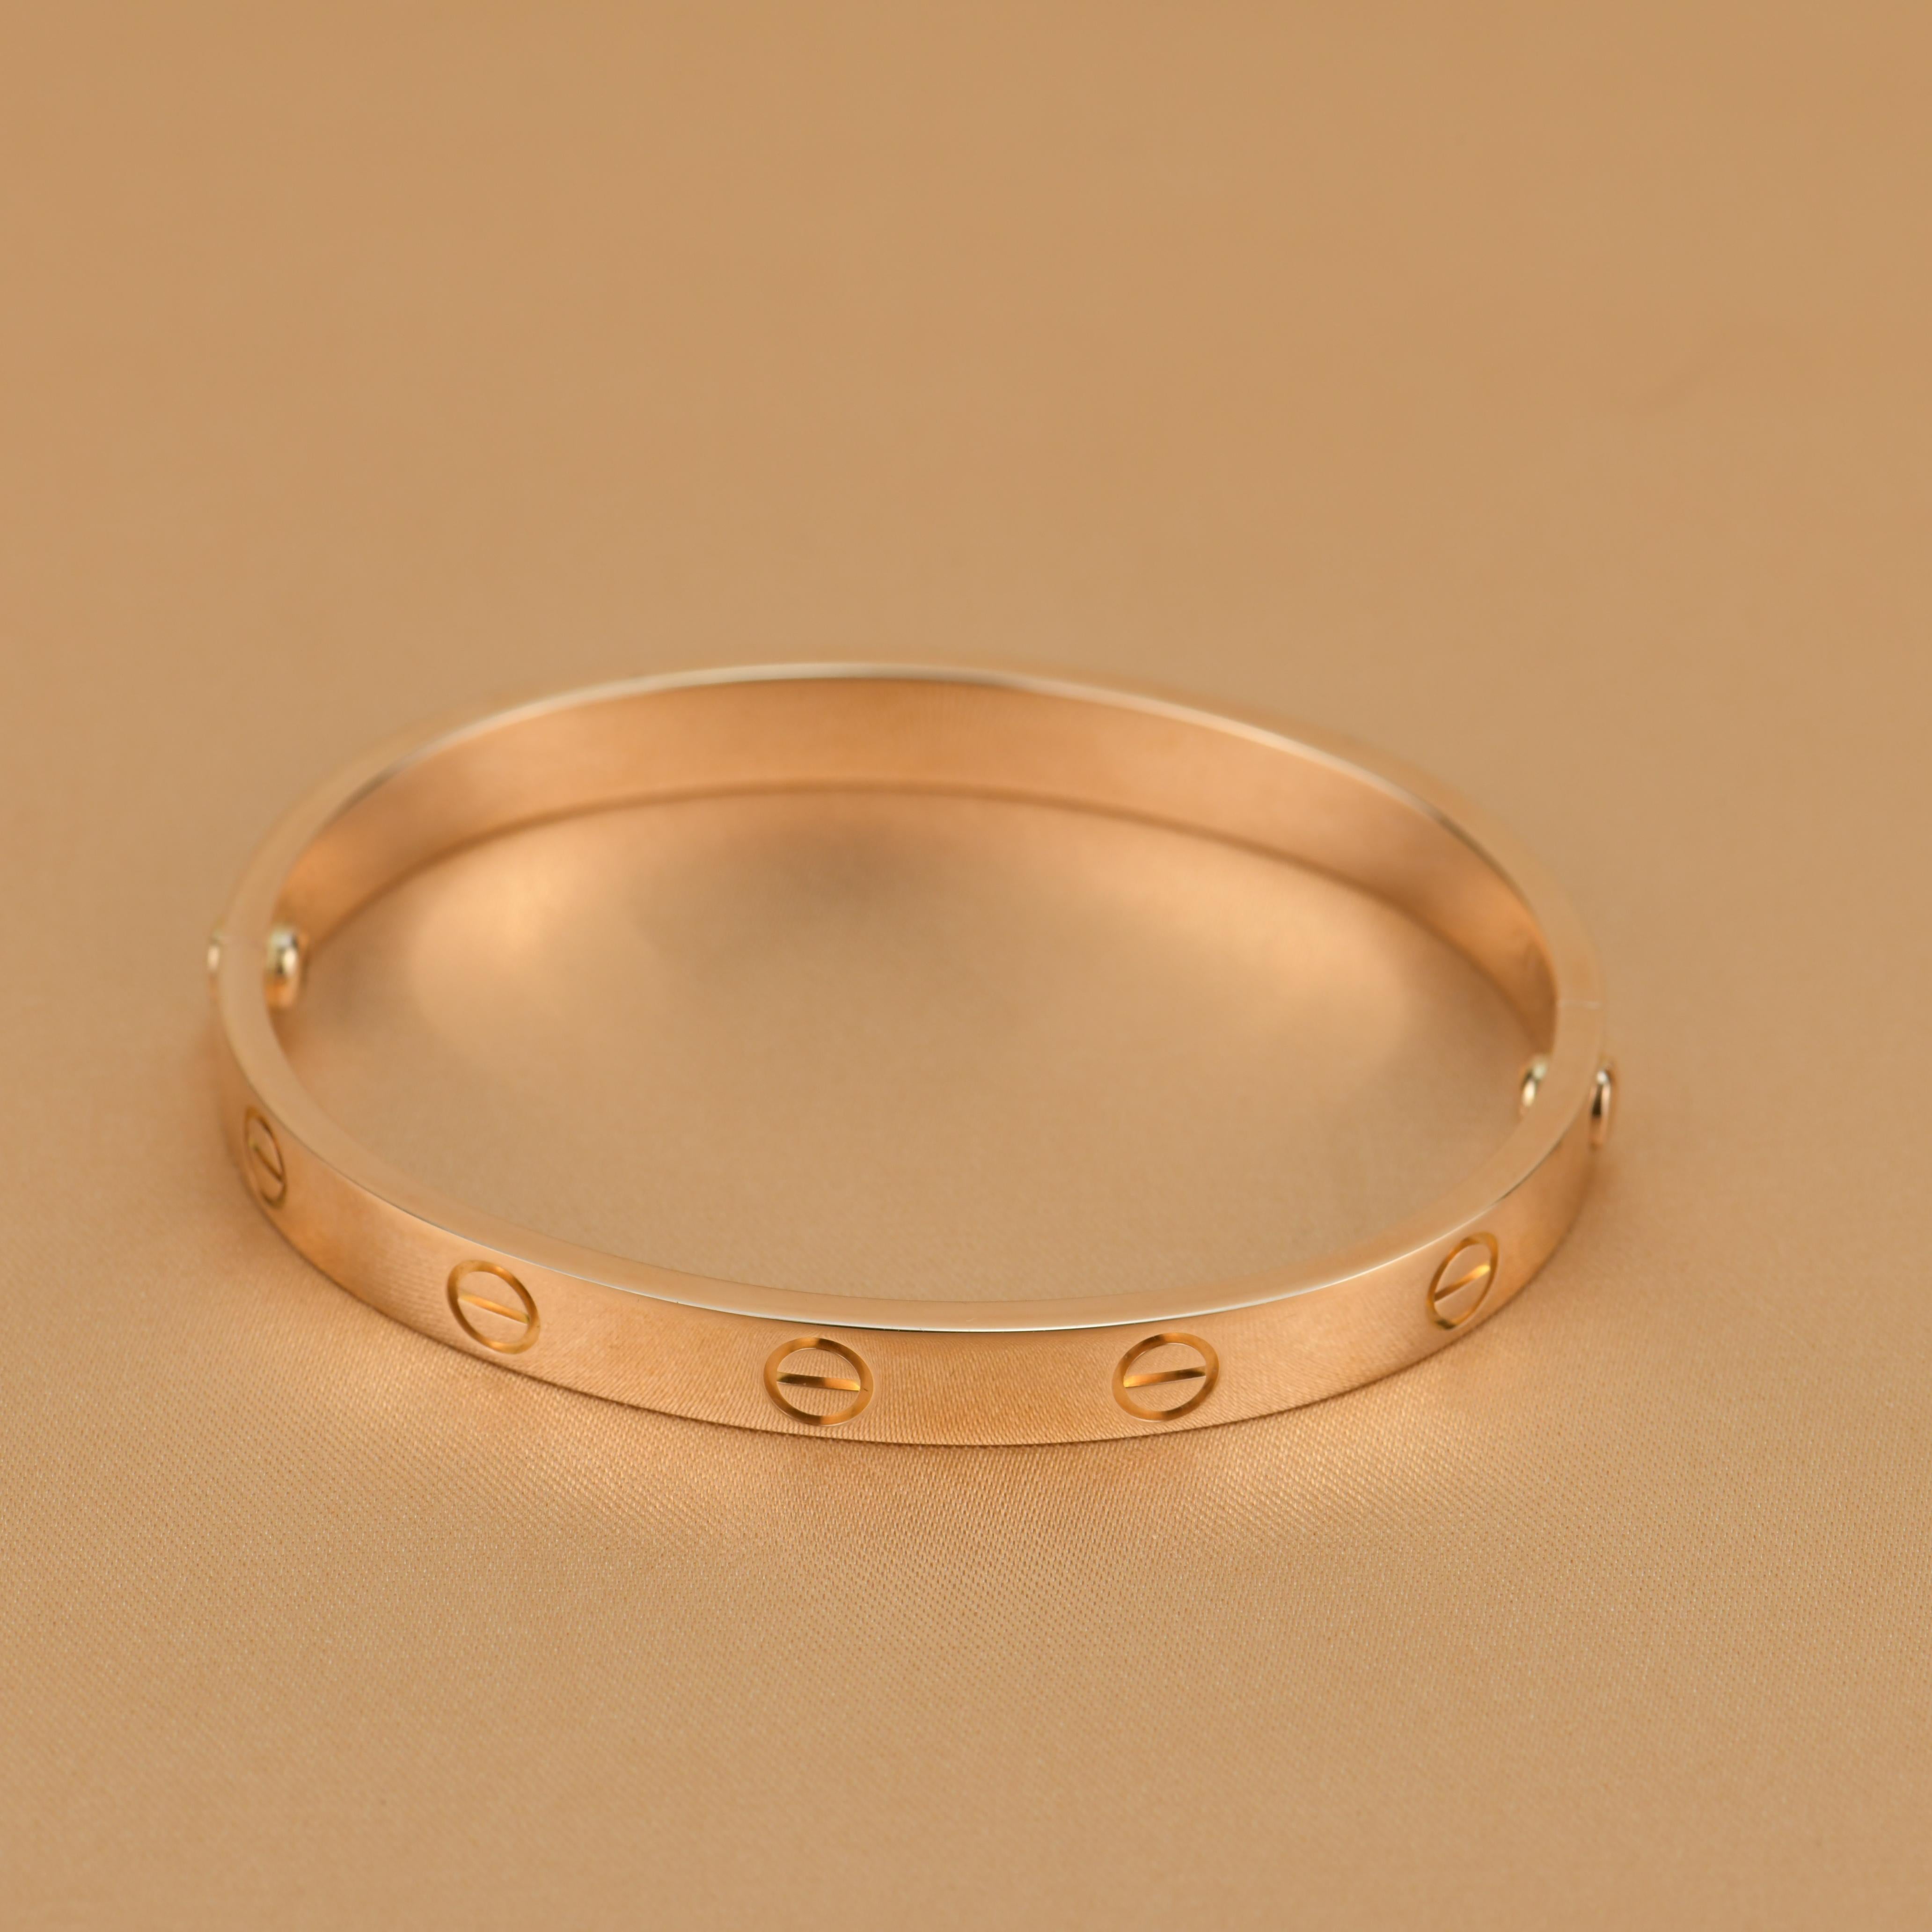 Cartier Love Rose Gold Bracelet B For Sale At 1stdibs